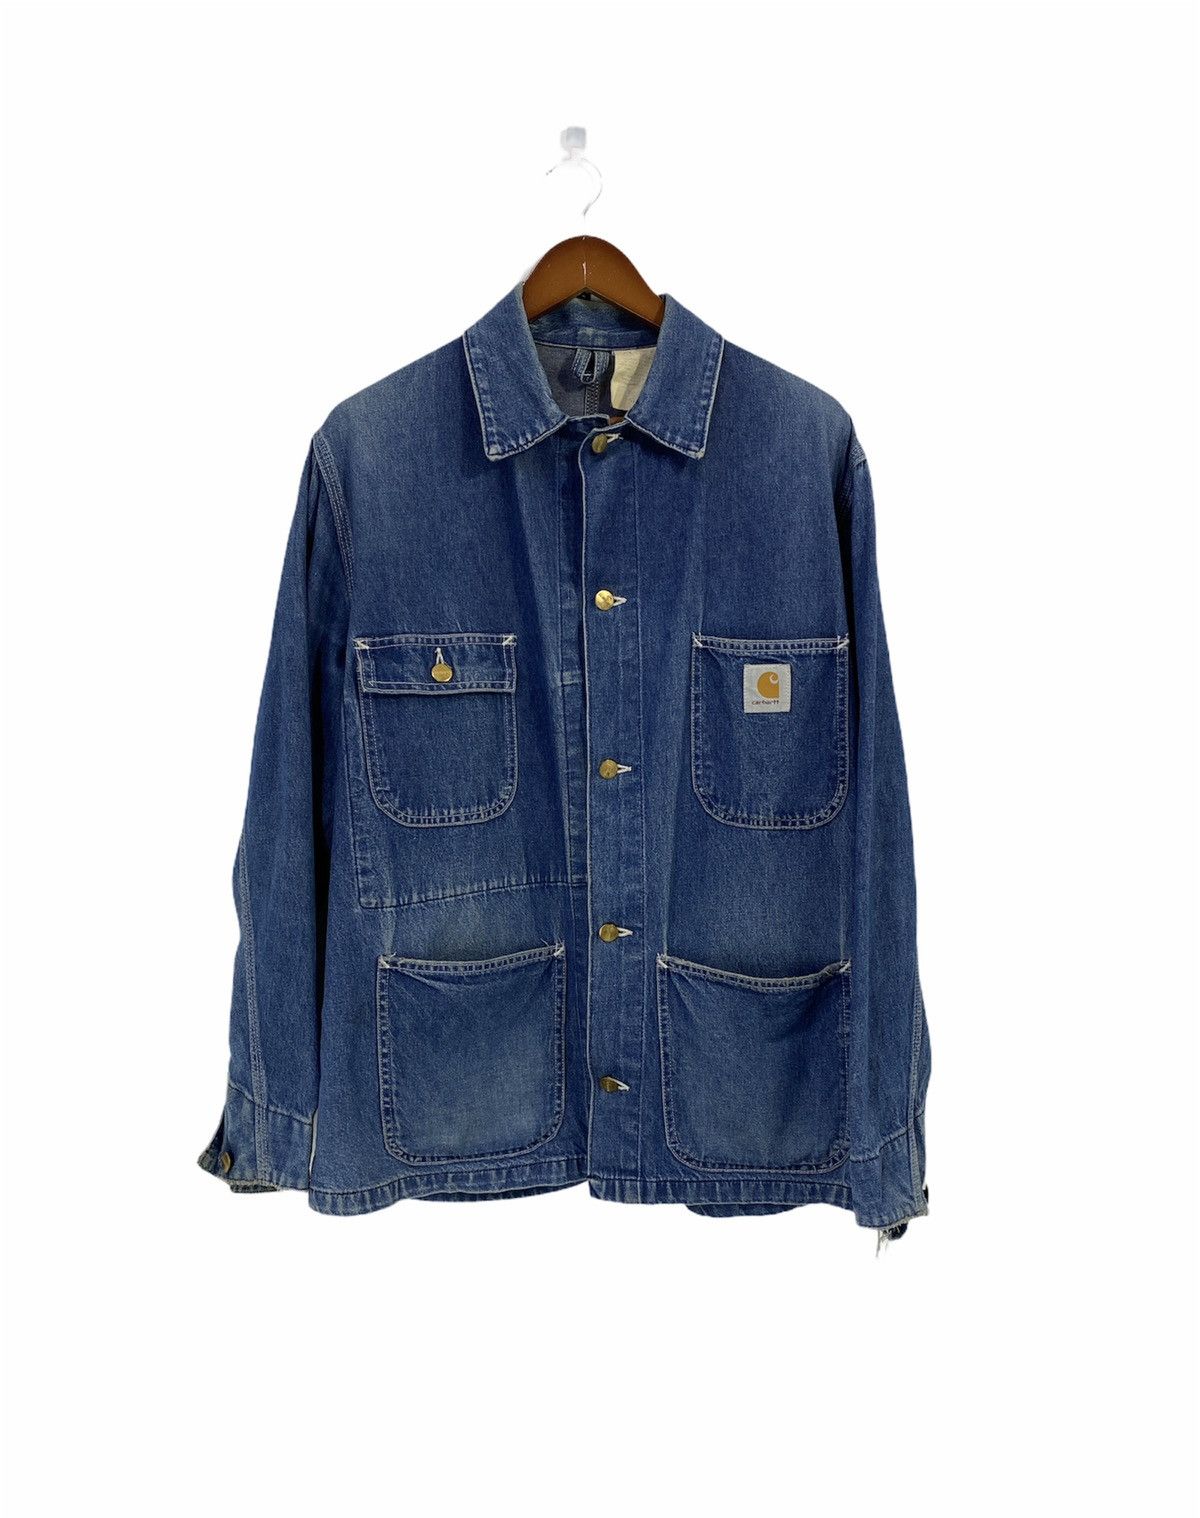 Carhartt Denim Chore Jacket Workwear Destressed Design - 1